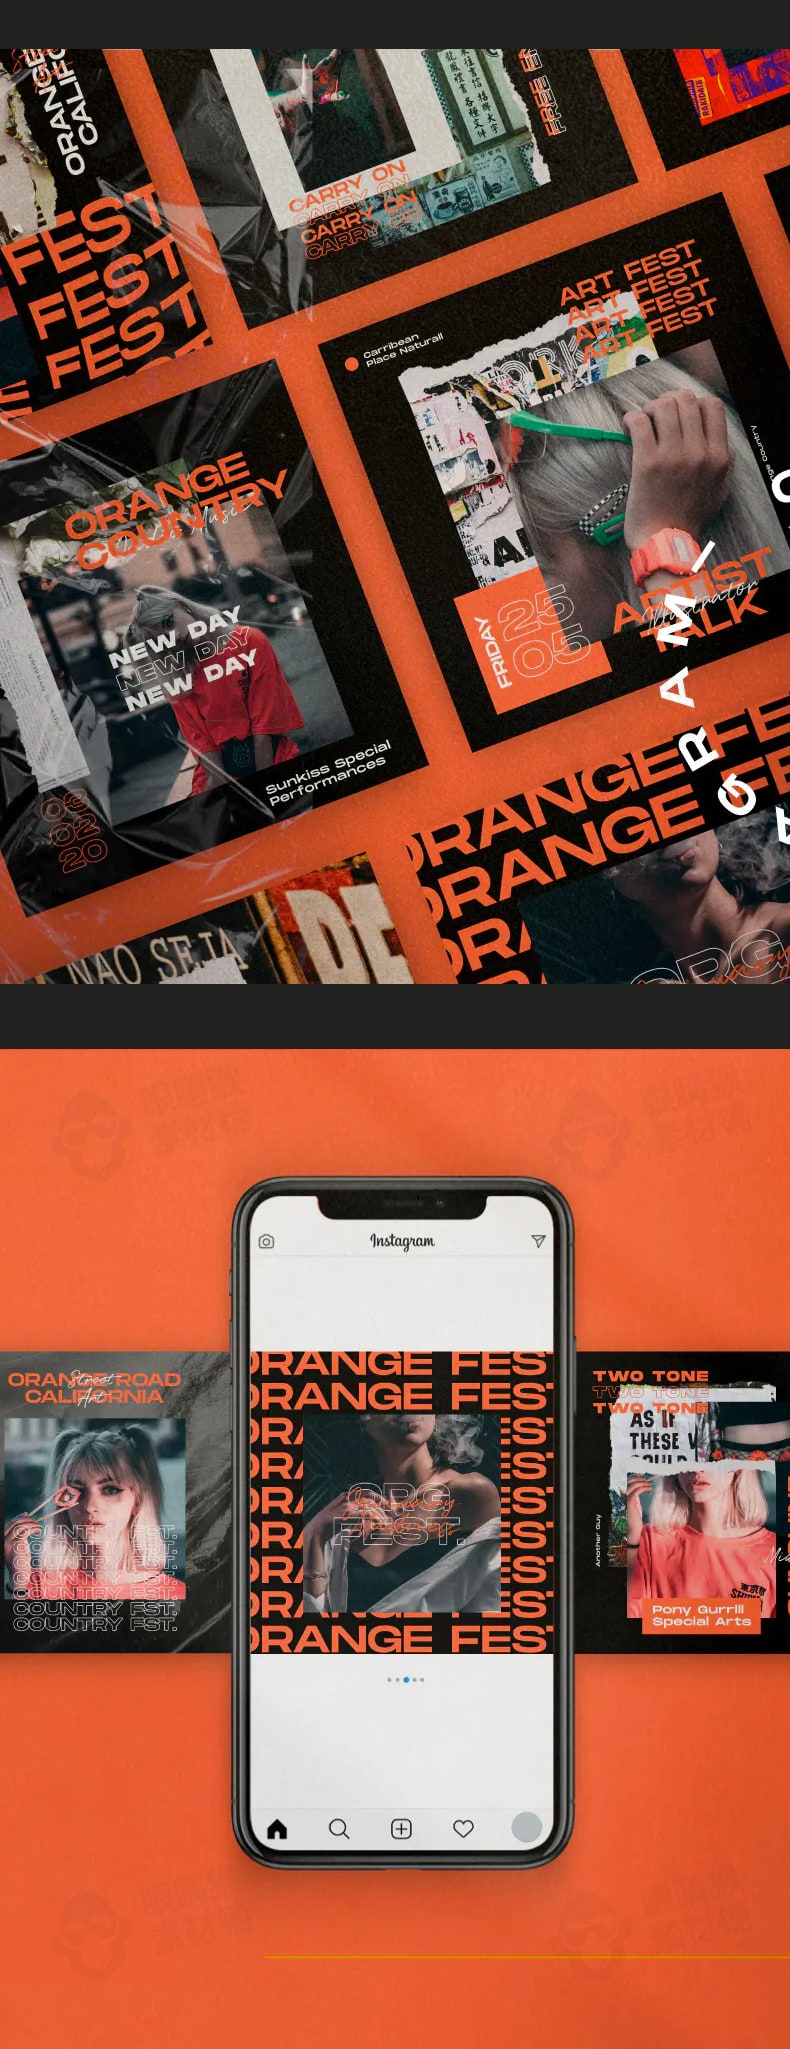 Orange社交媒体潮流海报杂志封面时尚服装版式psd设计素材源文件-海报素材-到位啦UI